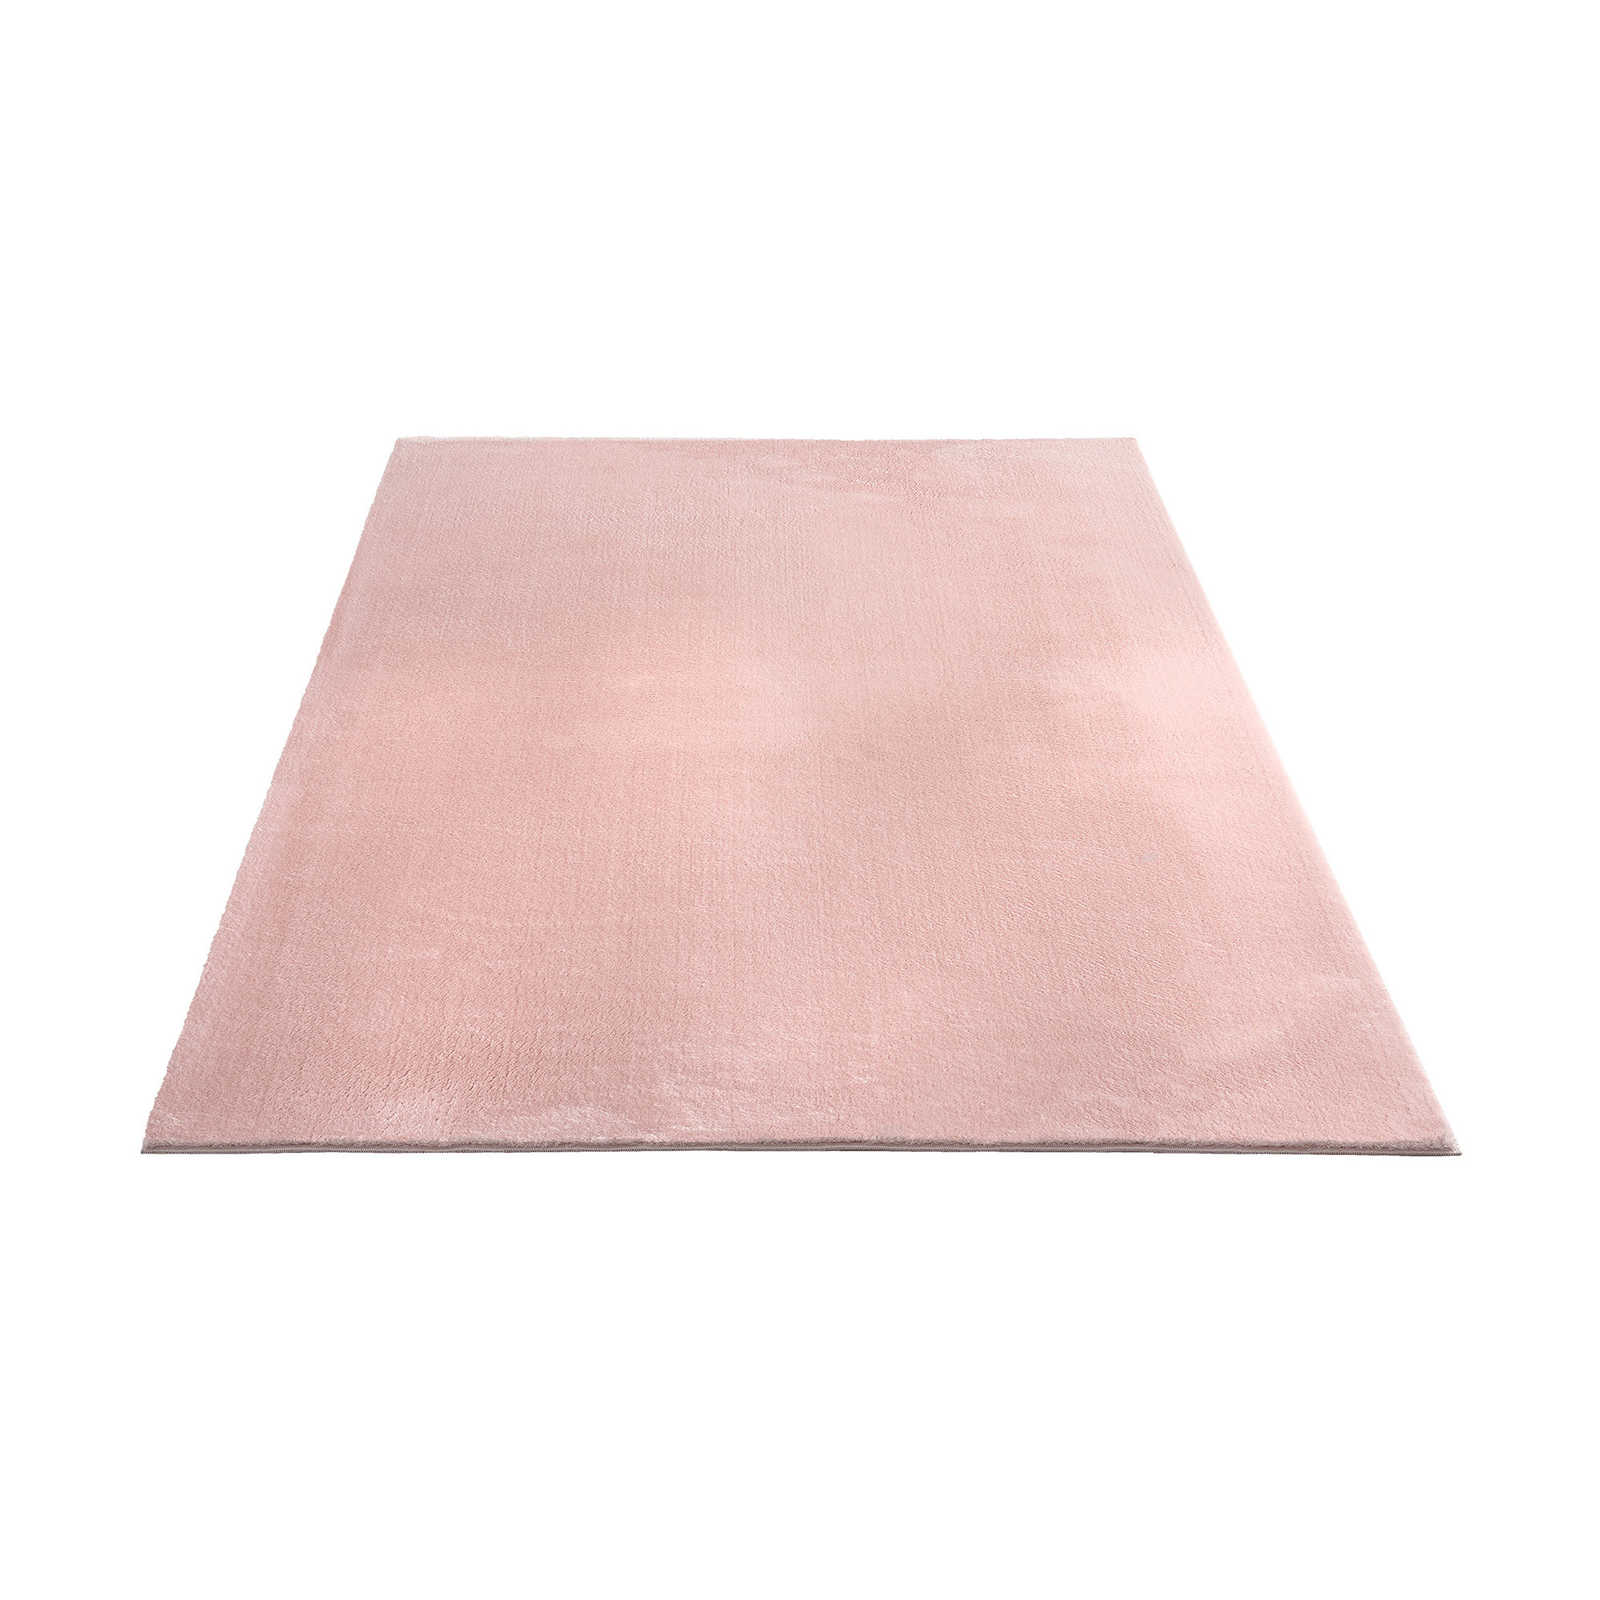 Tappeto a pelo delicato di colore rosa - 290 x 200 cm
